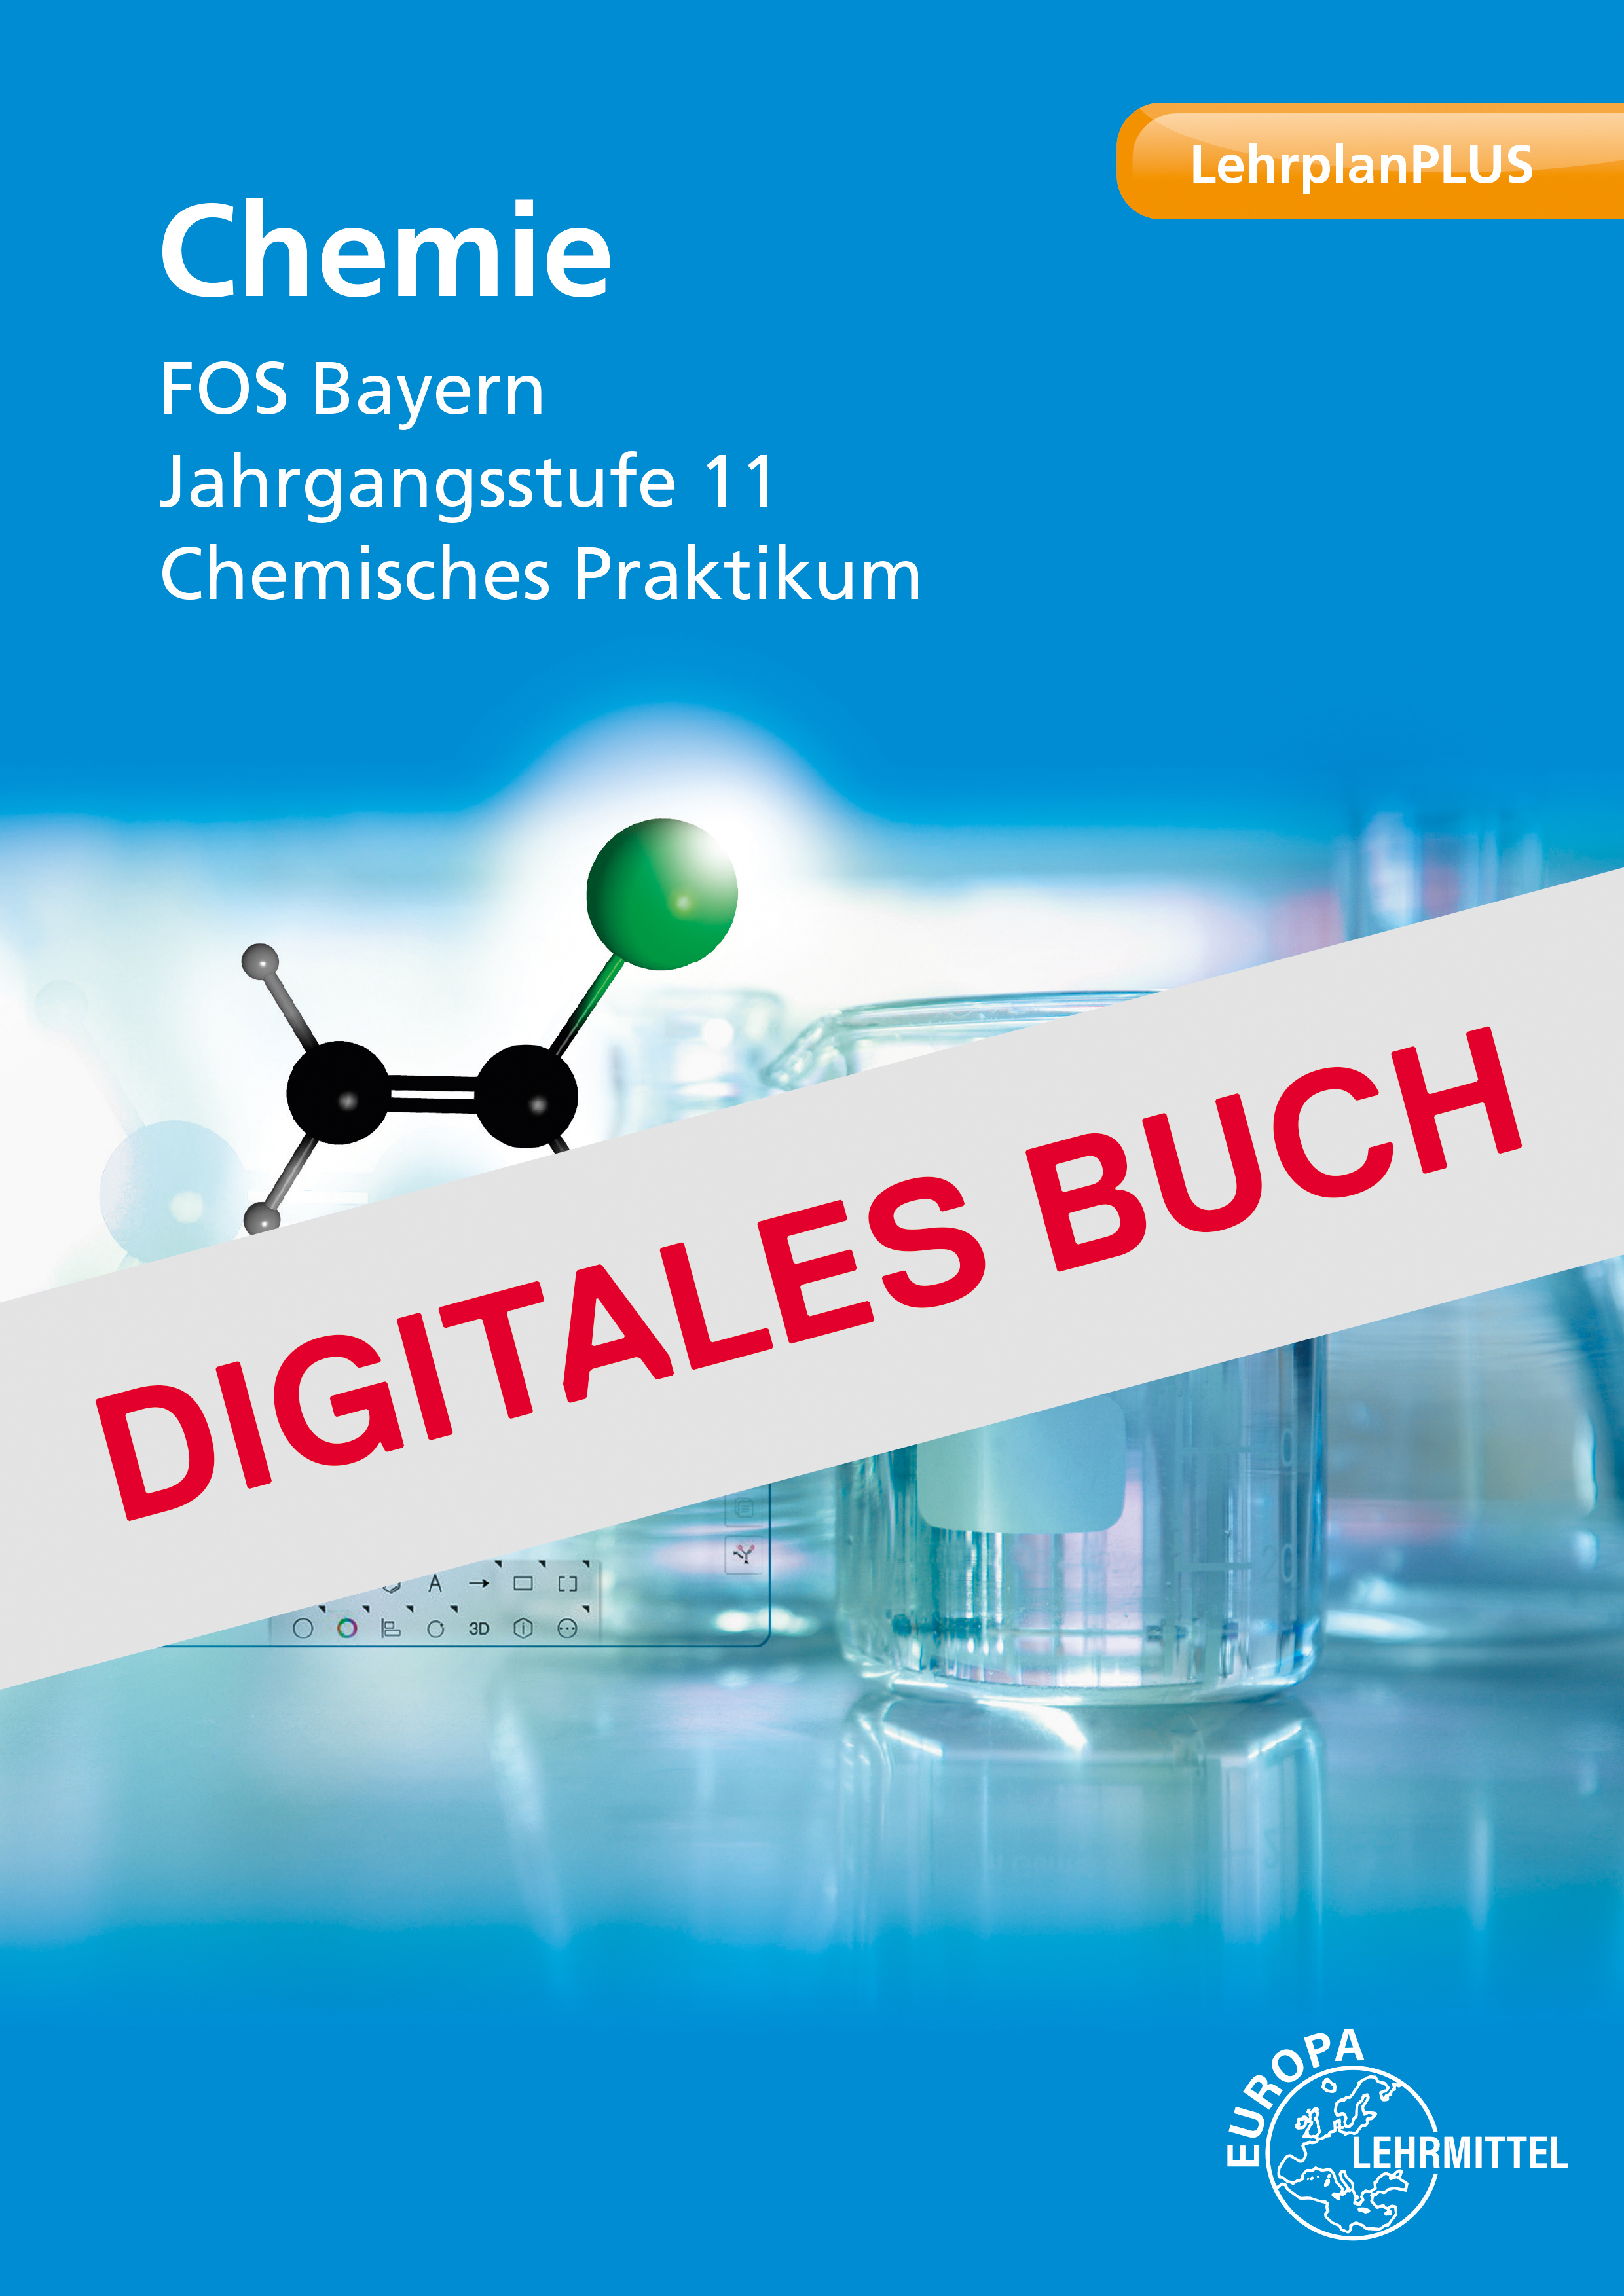 Chemie FOS Bayern Jahrgangsstufe 11 Chemisches Praktikum - Digitales Buch